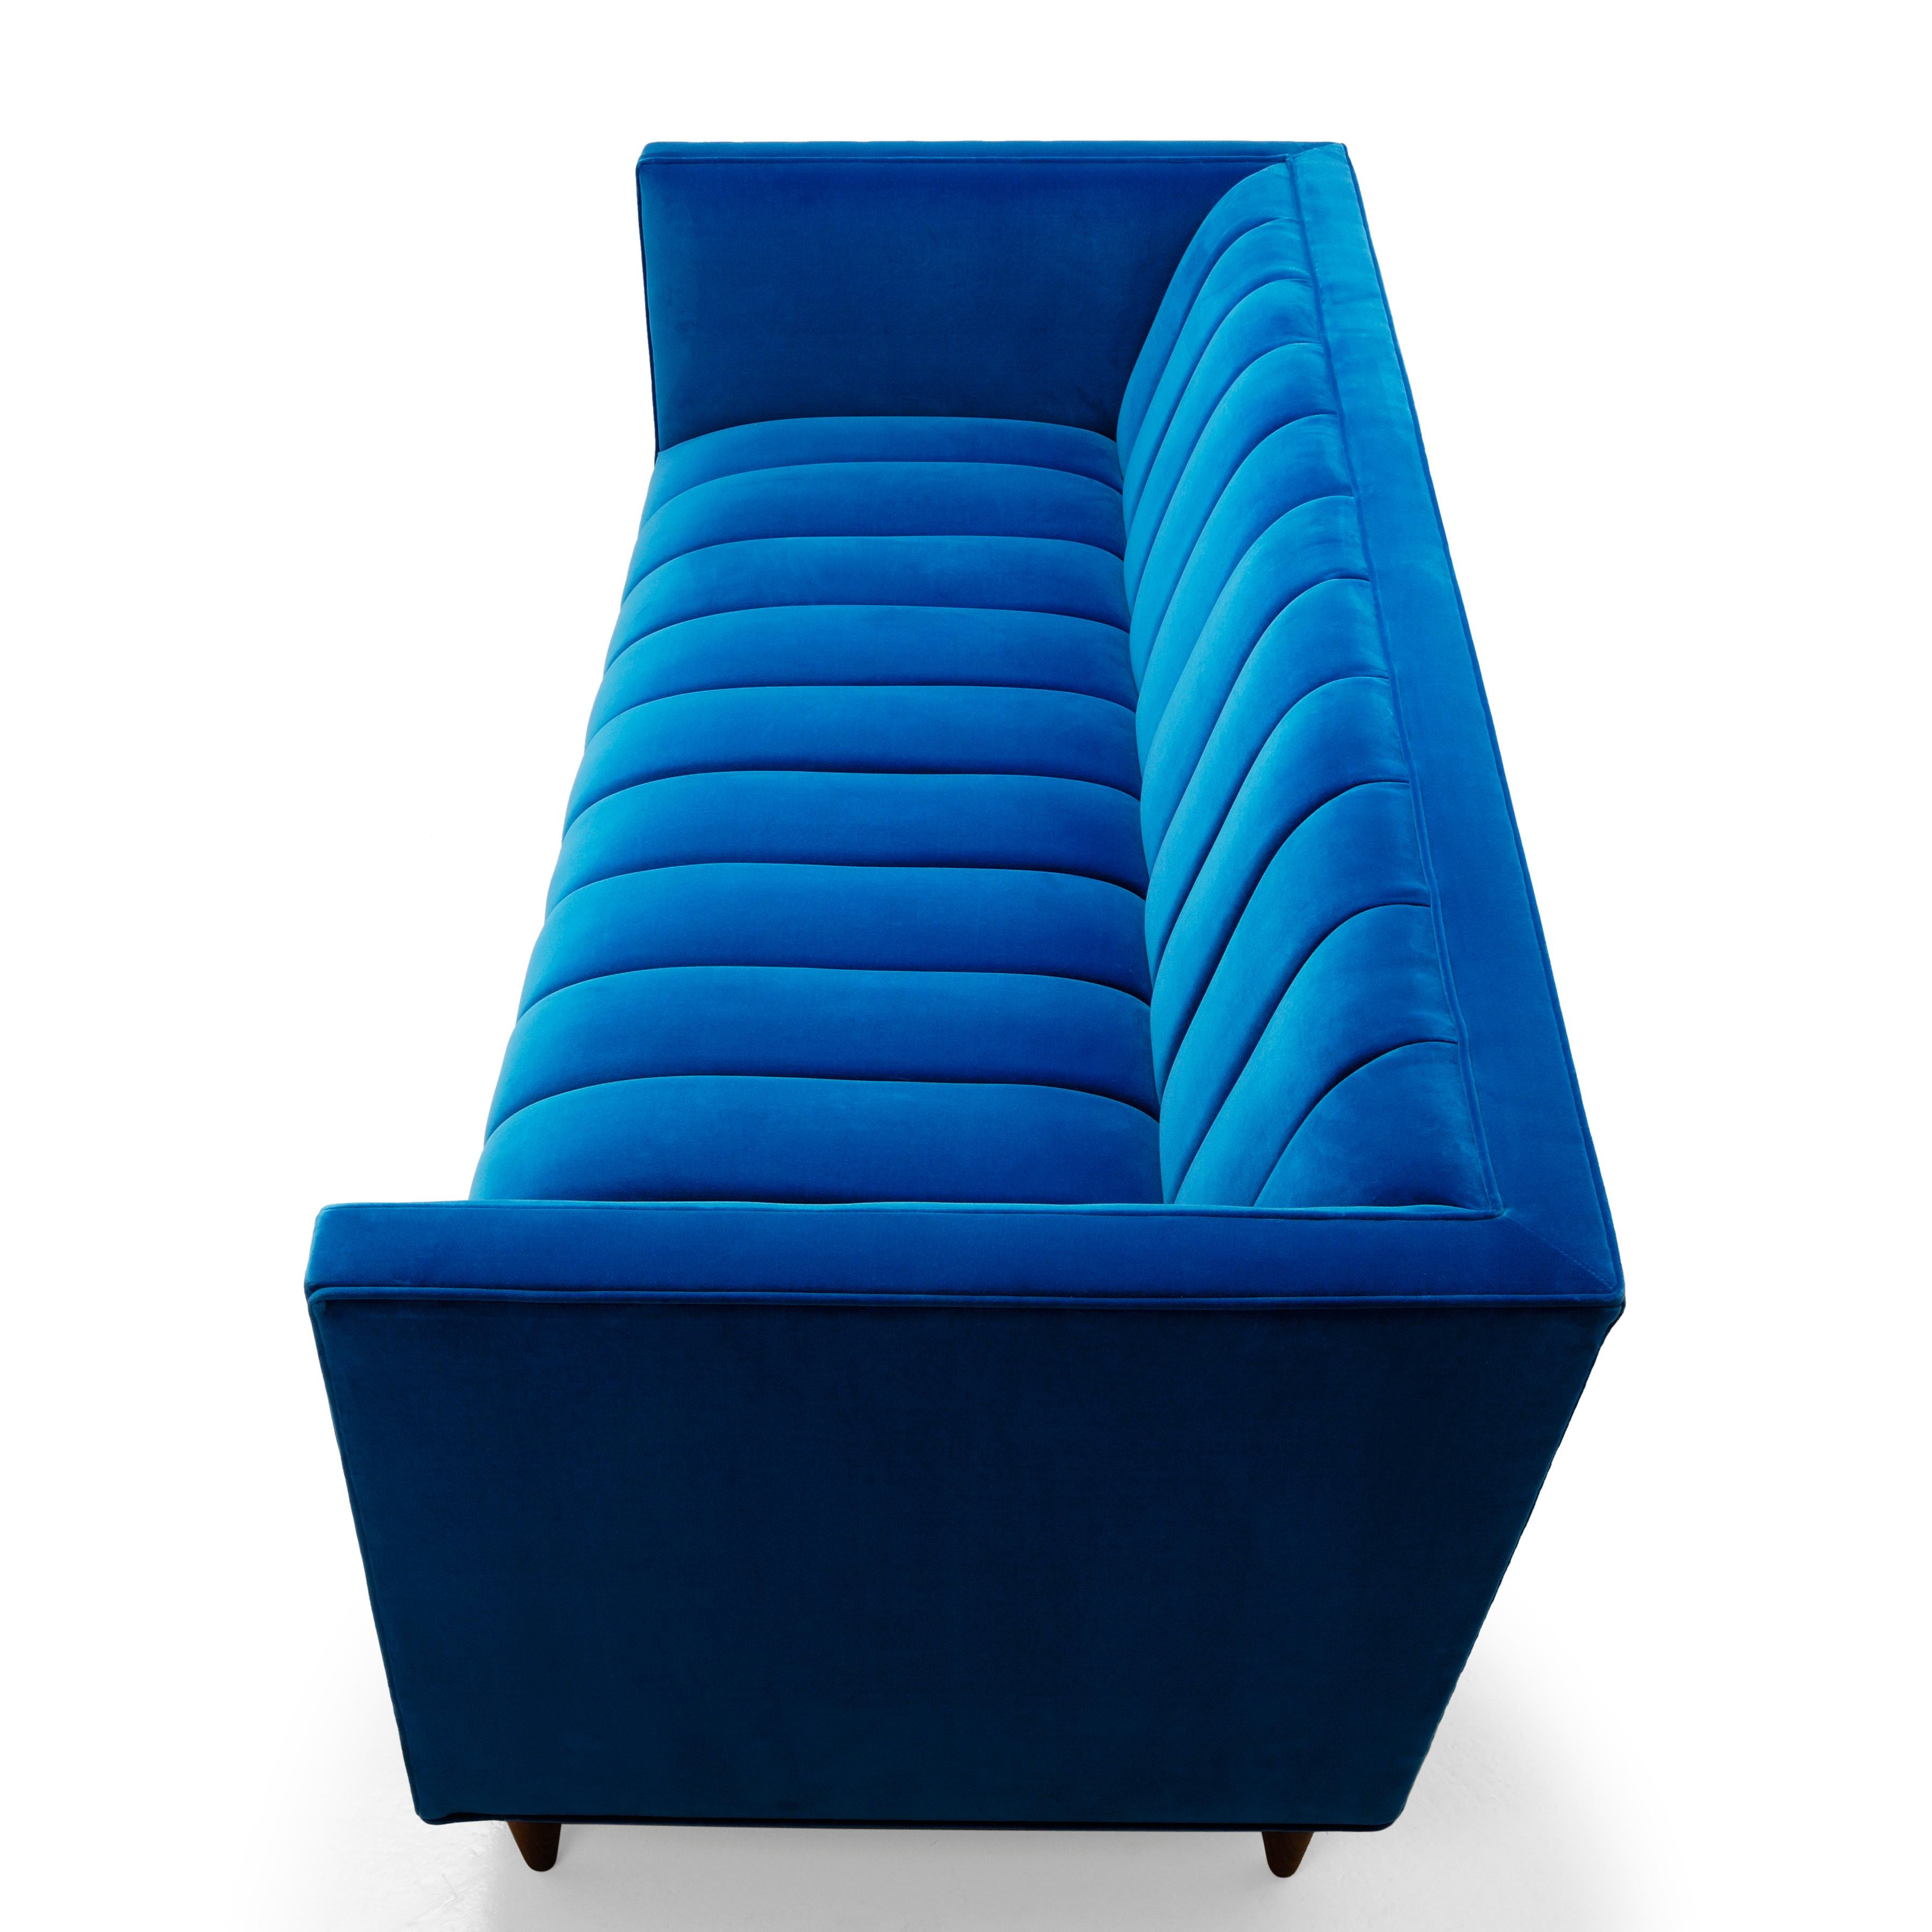 Das preisgekrönte Fleure Sofa ist ein auffälliges Design, das alle Blicke auf sich zieht. Er strahlt eine moderne Ausstrahlung aus, aber mit traditionellen Stilelementen, wie die exquisite Riffelung auf dem Sitz- und Rückenkissen zeigt. 
Gewinner